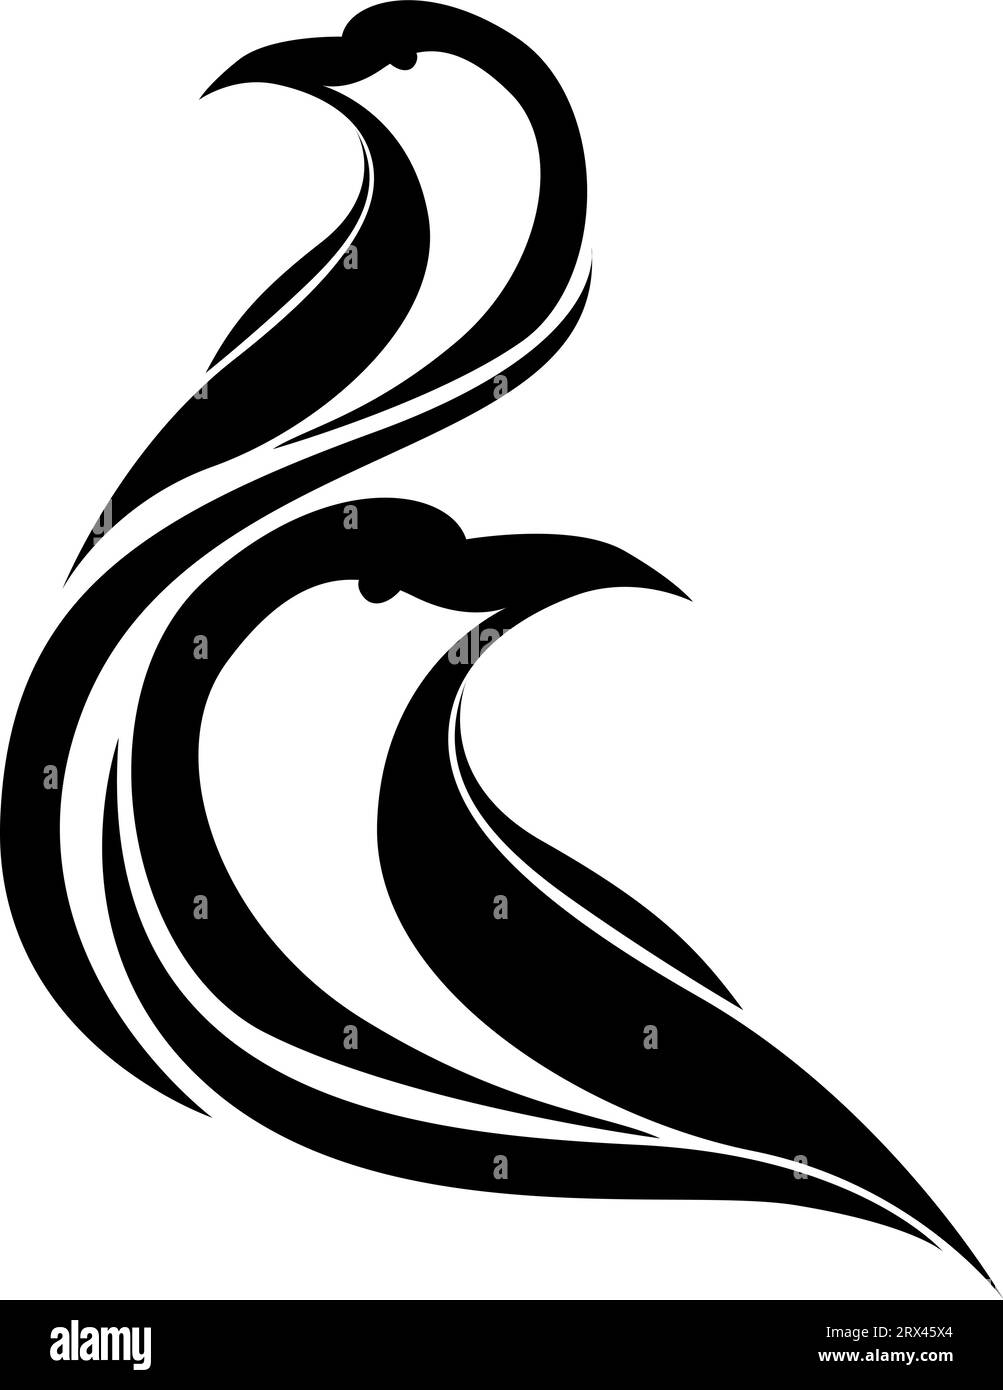 Set of 2 Black Swans Temporary Tattoo Waterproof Black Swan - Etsy